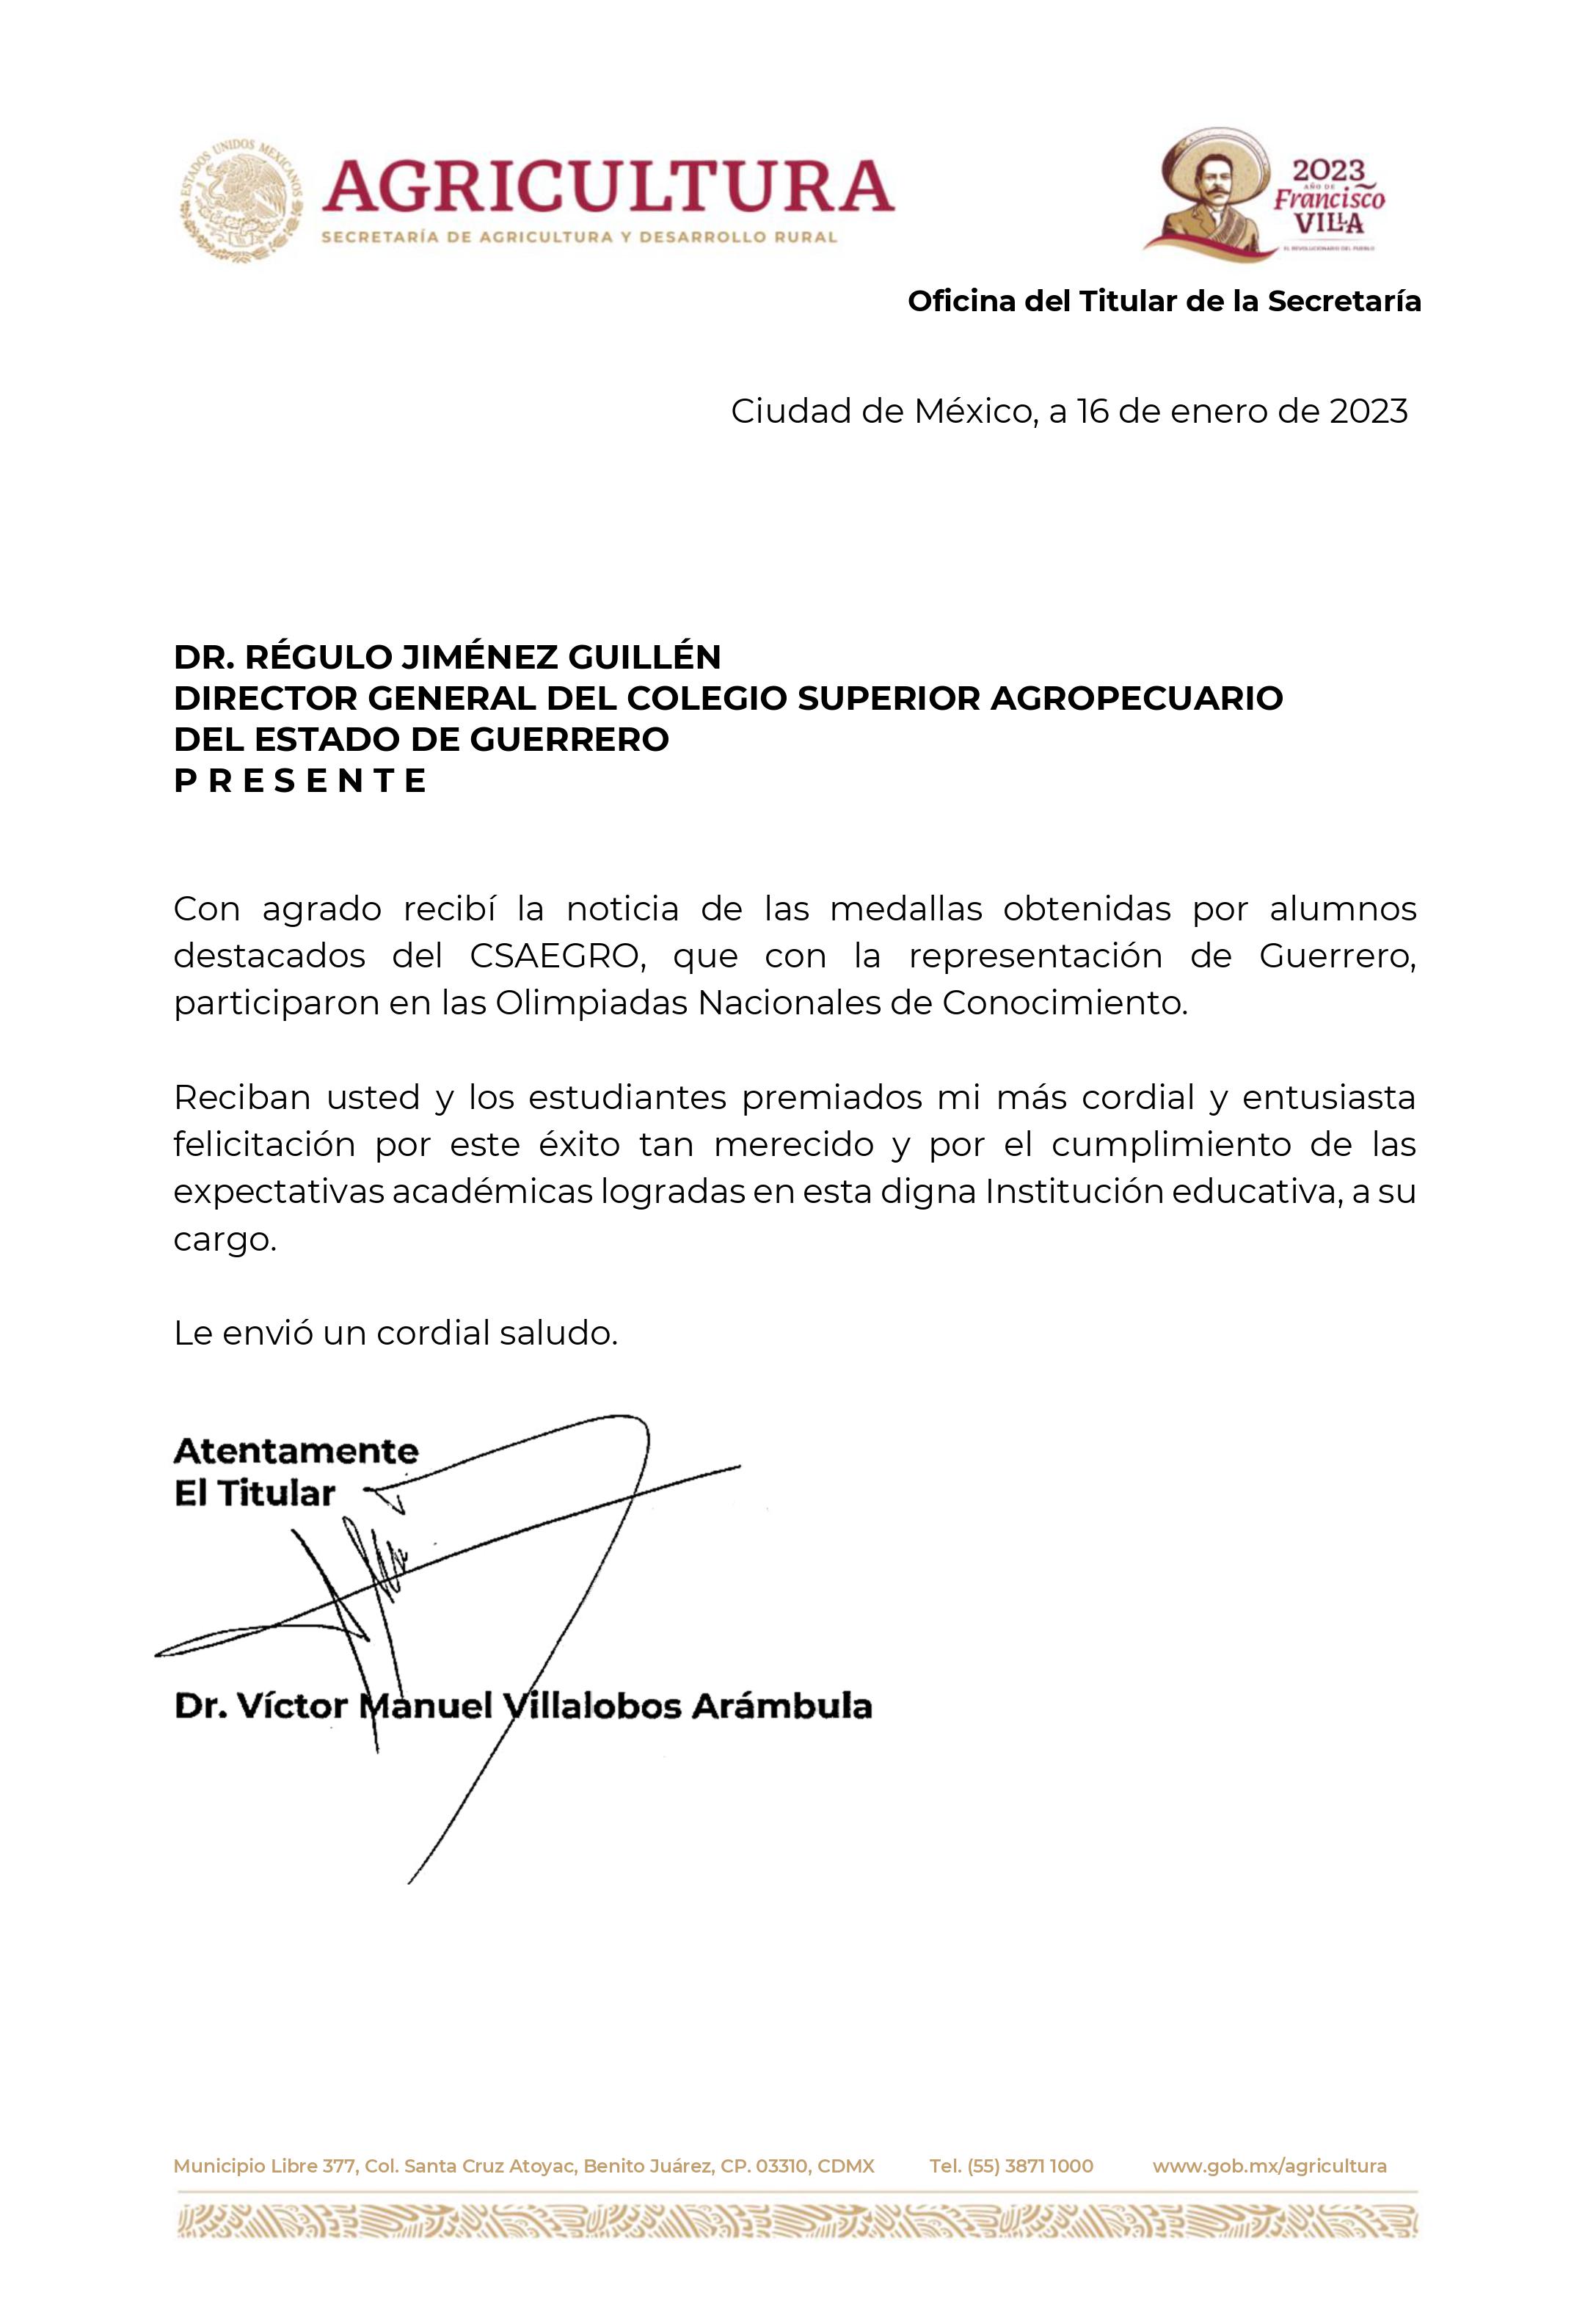 Carta de Felicitación por la obtención de medallas en Olimpiadas Nacionales de Conocimiento. - Dr. Victor Manuel Villalobos Arámbula